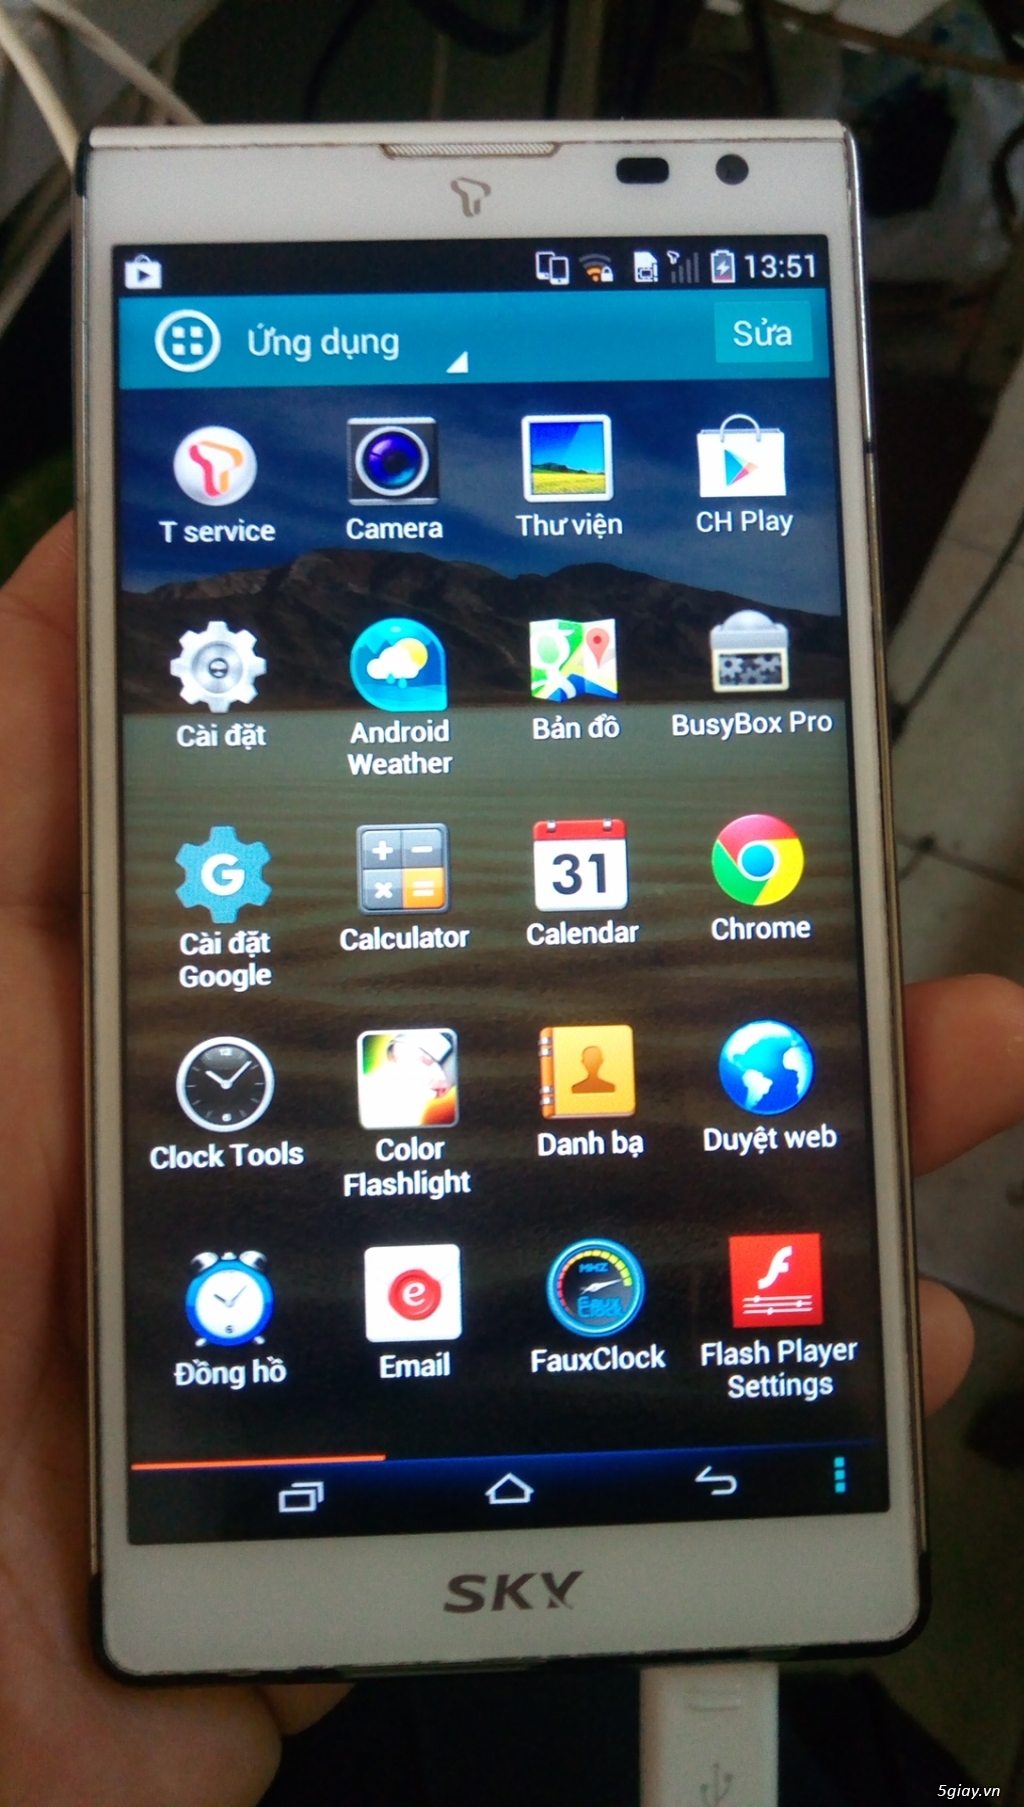 Cầm TLý Nhiều ĐT Samsung iPhone Samsung Oppo  LG... Giá Rẻ Mới, BH Lâu - 44